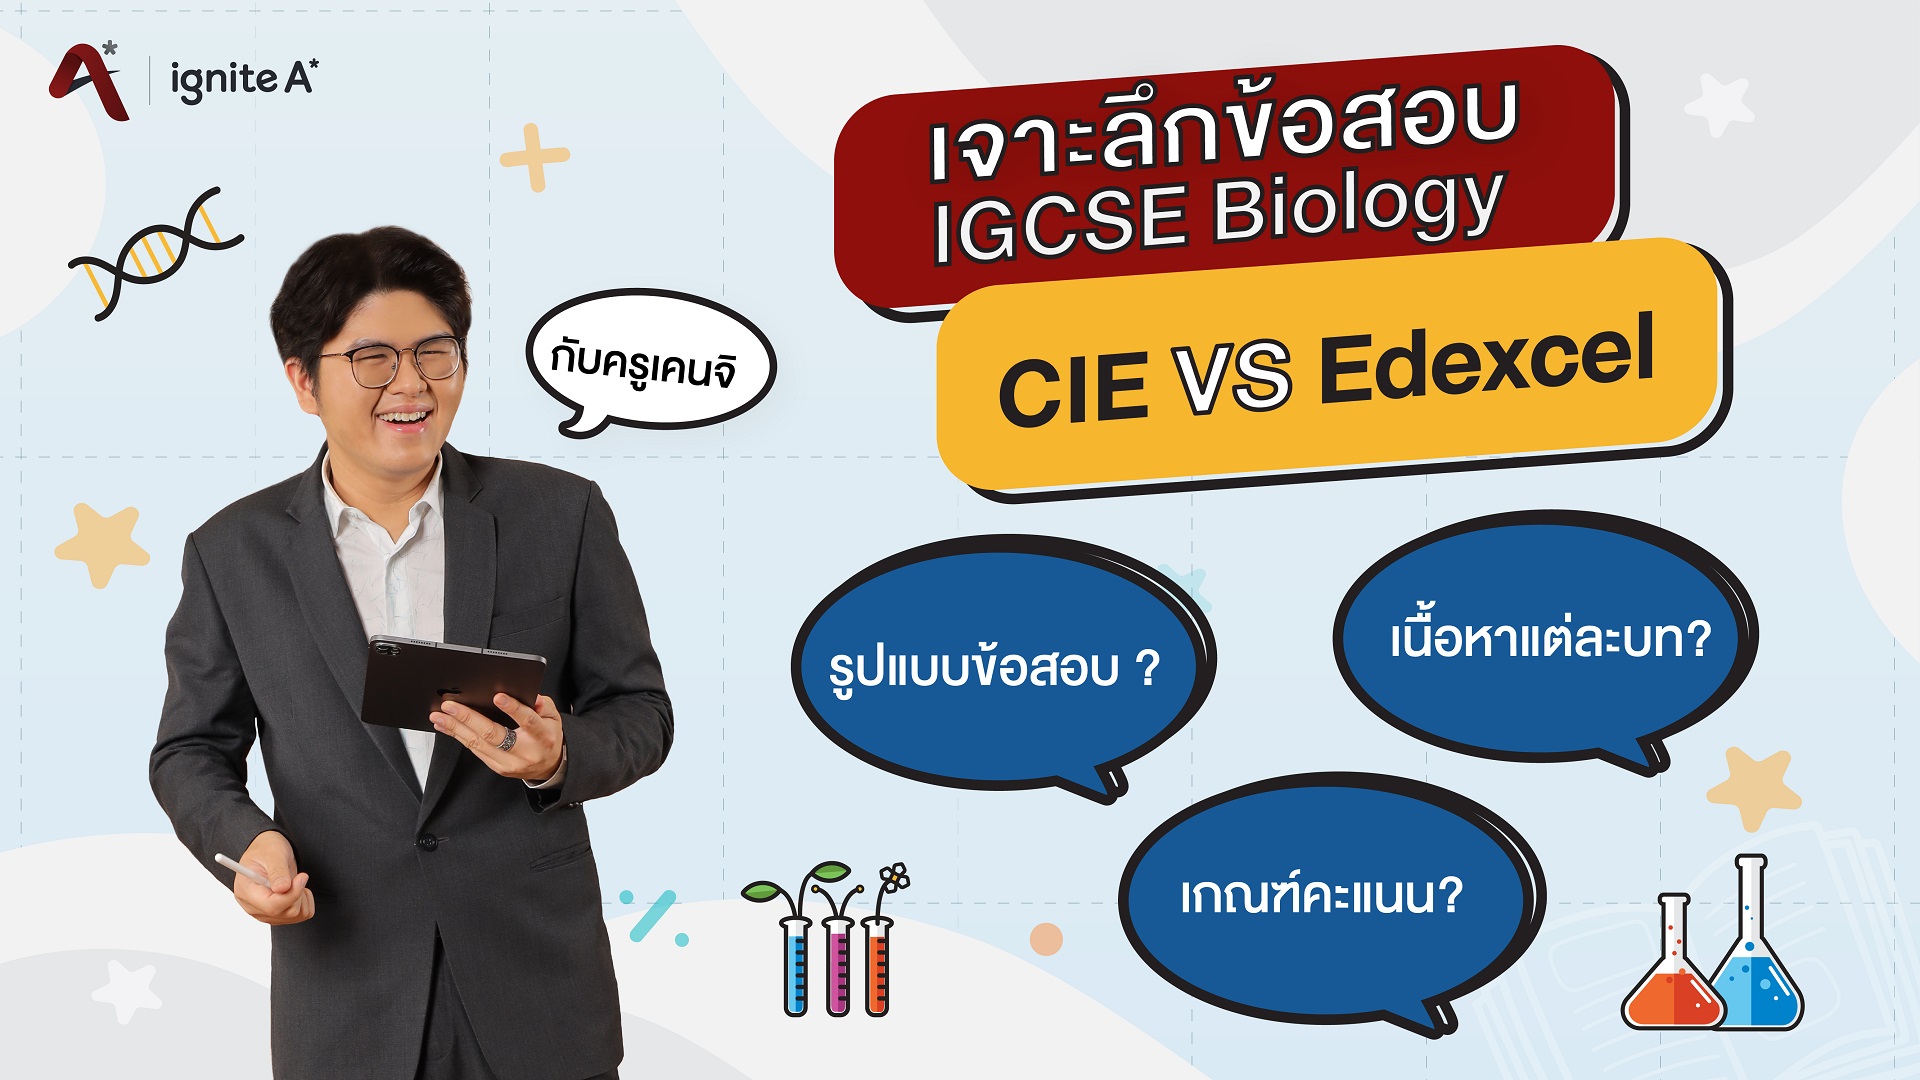 เจาะลึกข้อสอบ IGCSE Biology - CIE vs Edexcel- by พี่เคนจิ - Bigcover1